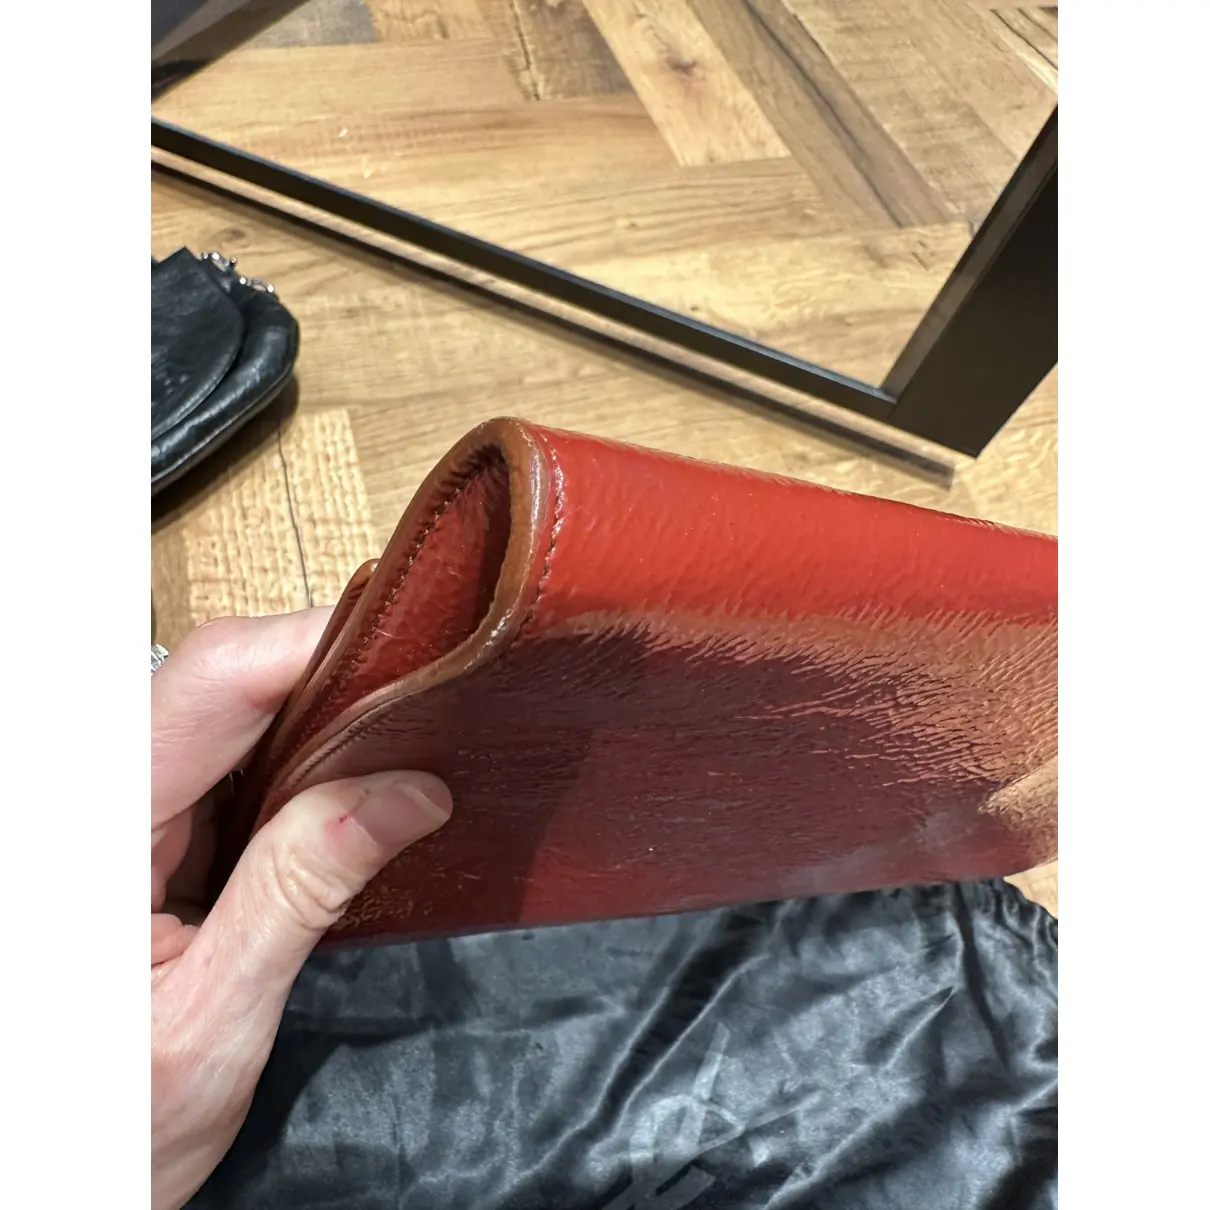 Belle de Jour leather clutch bag Yves Saint Laurent - Vintage